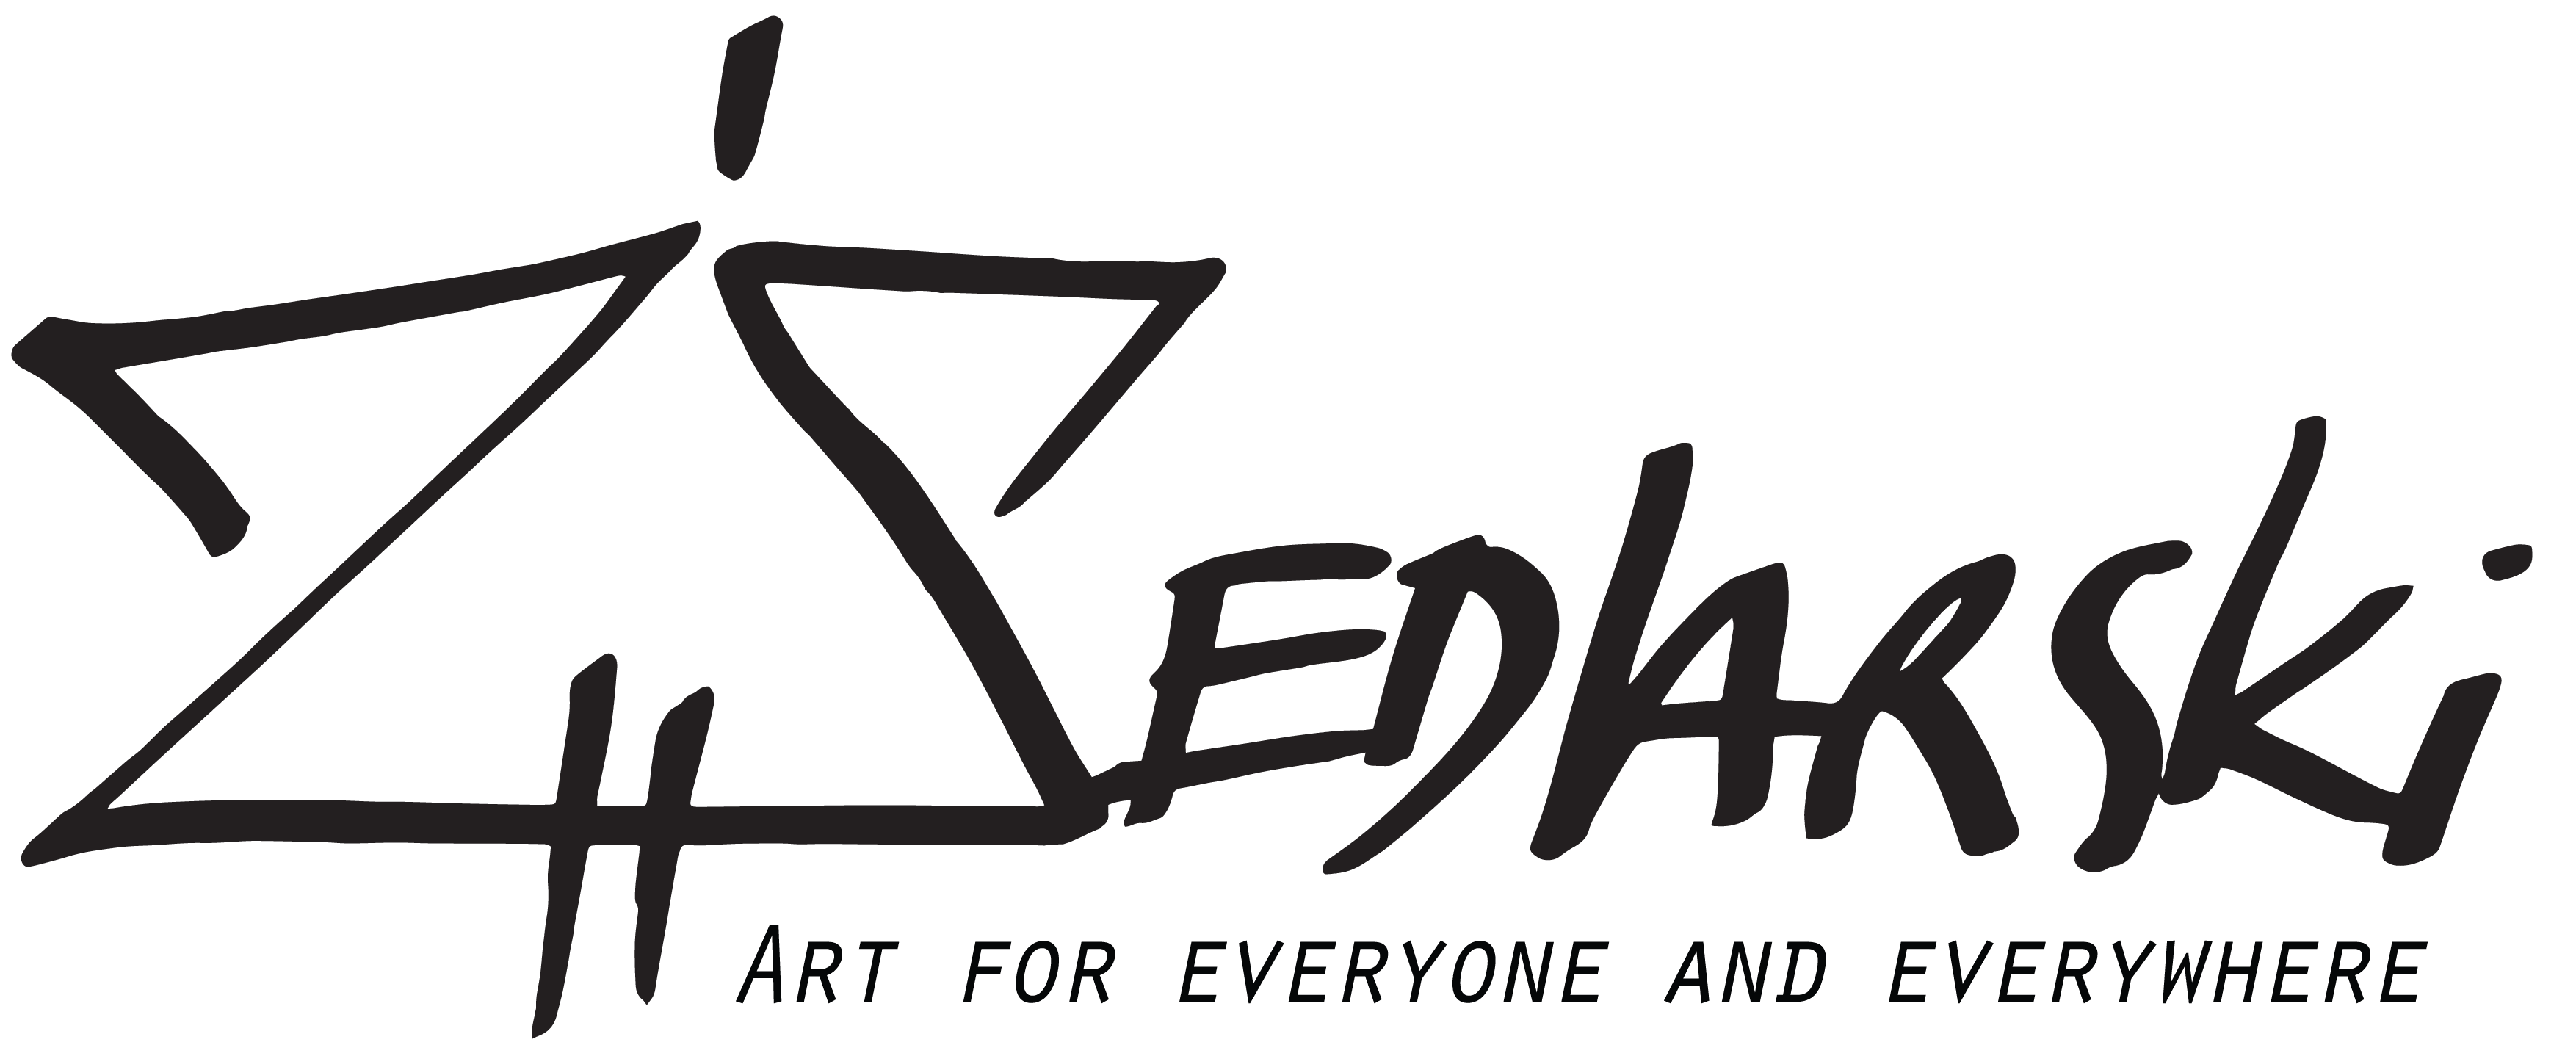 sedlarski-art logo